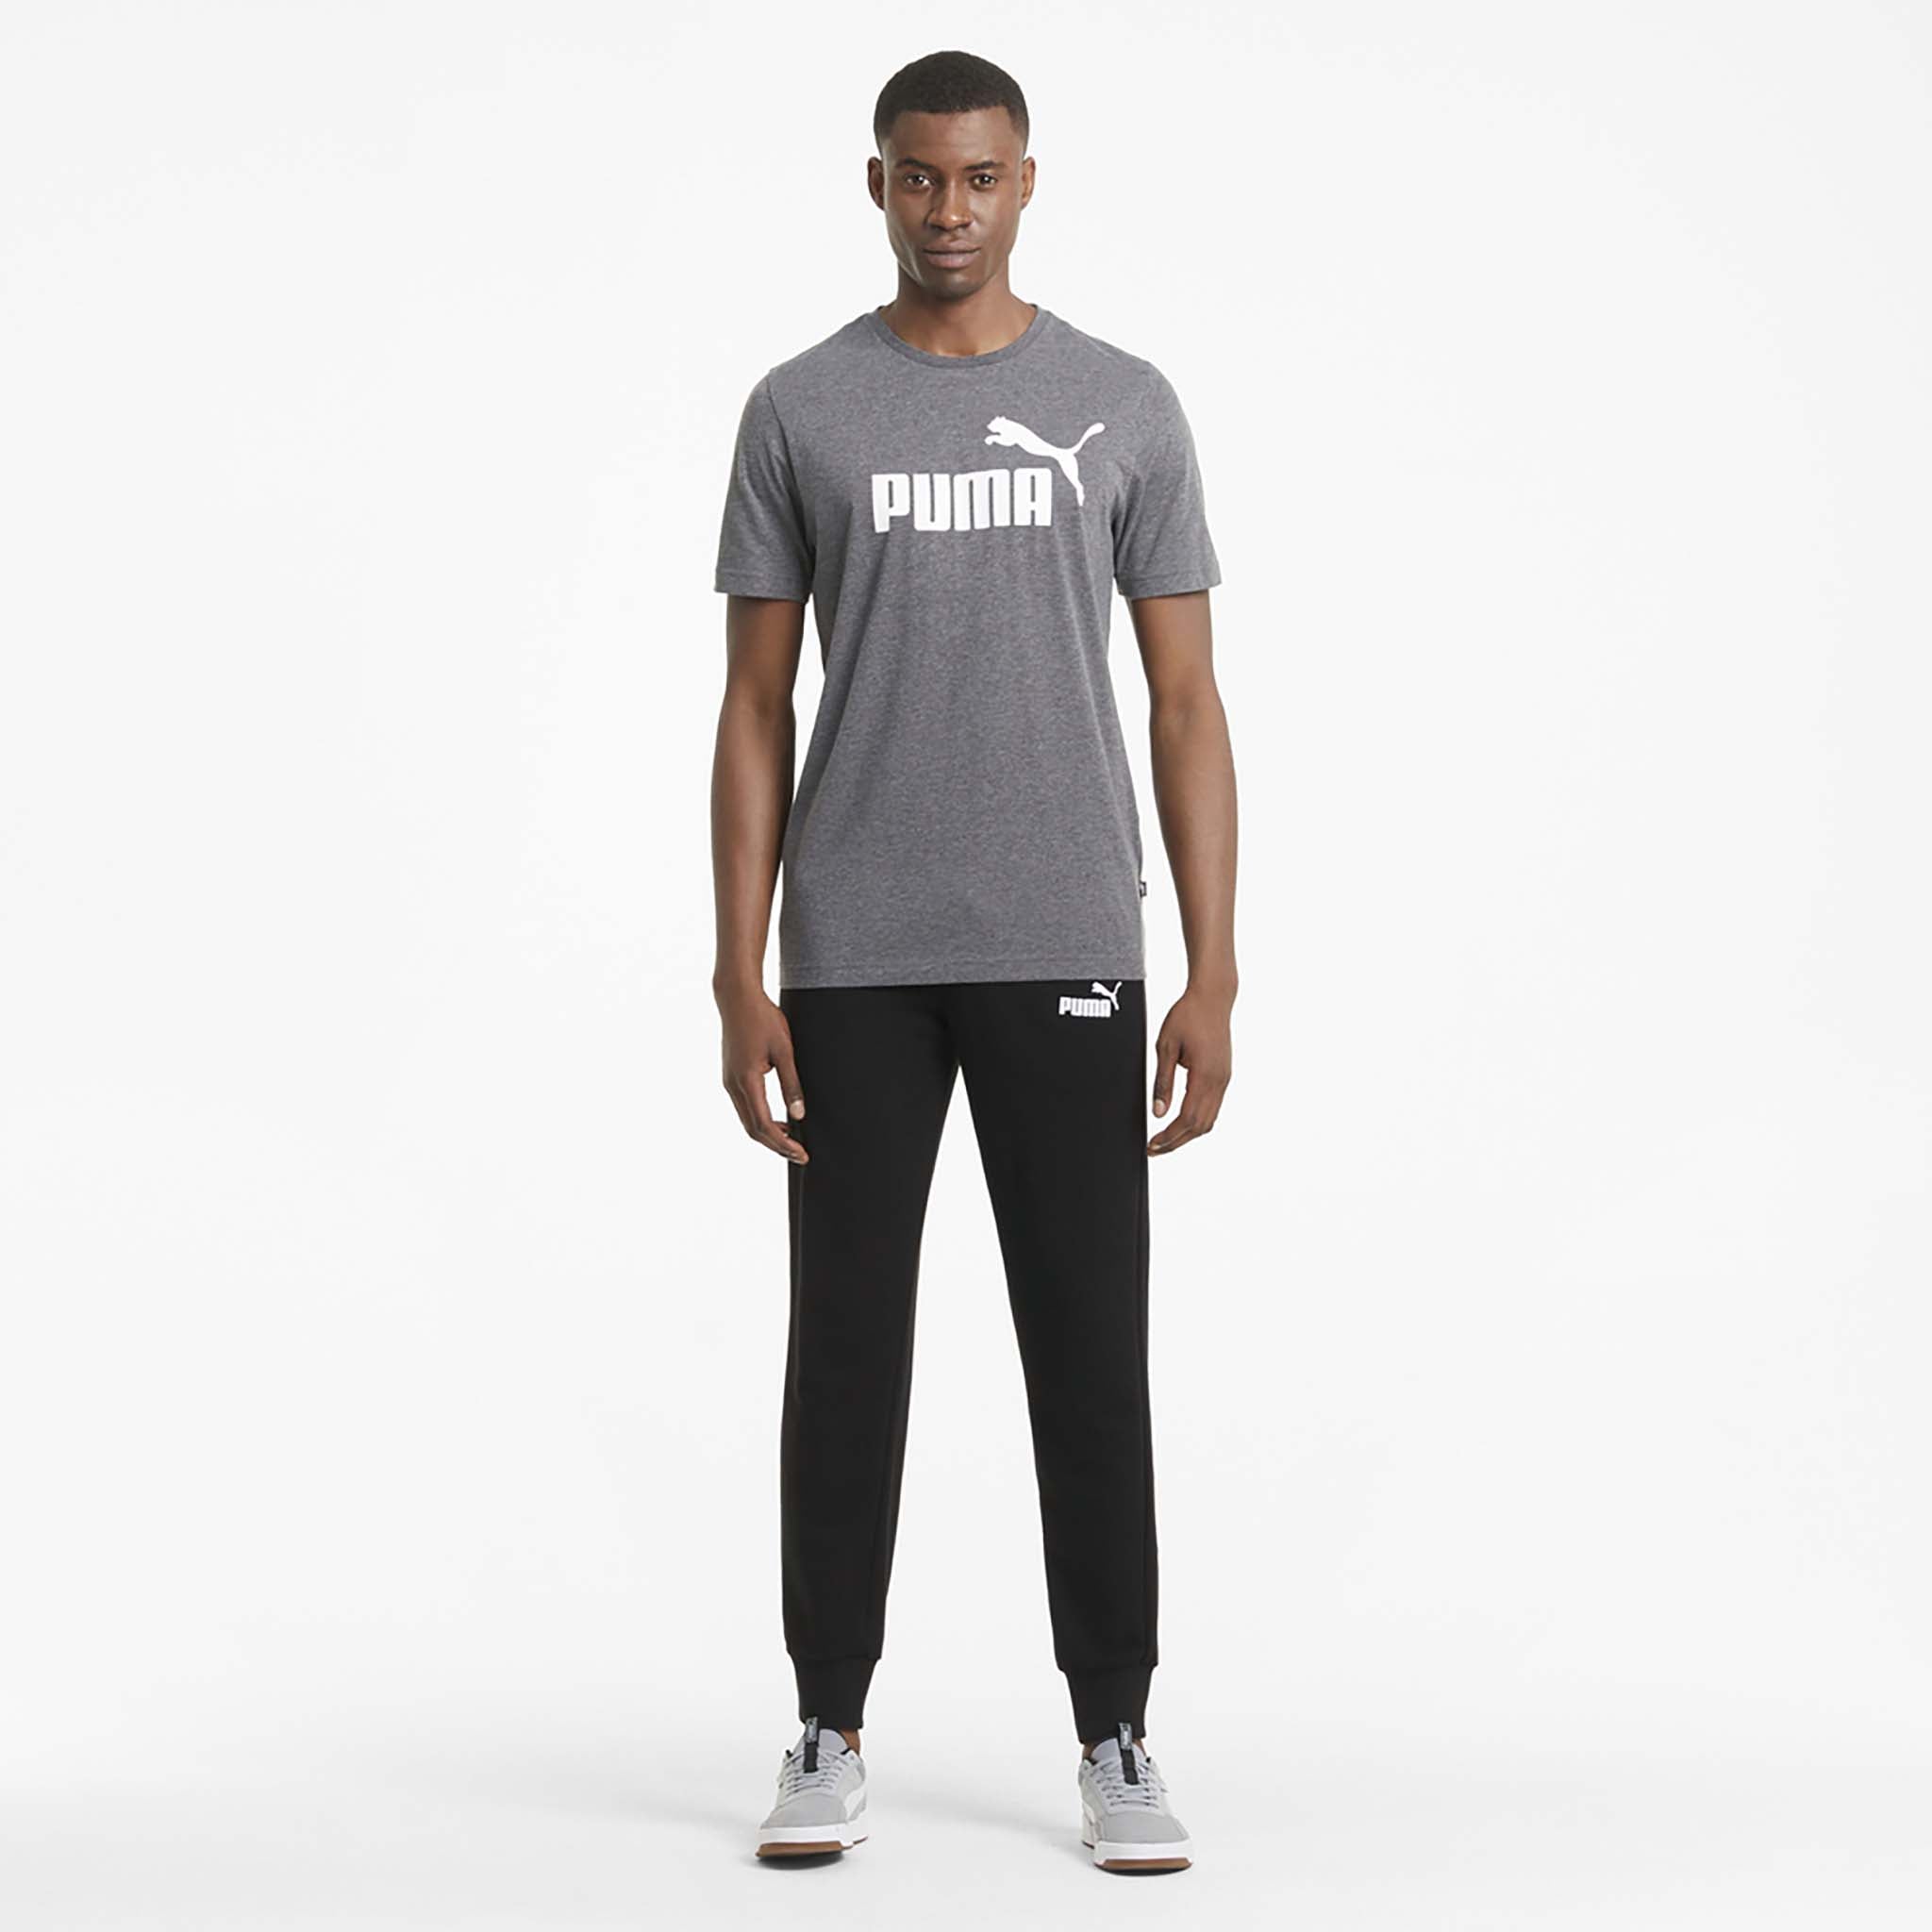 Puma Essentials Logo Pants Mens Grey Casual Athletic Bottoms